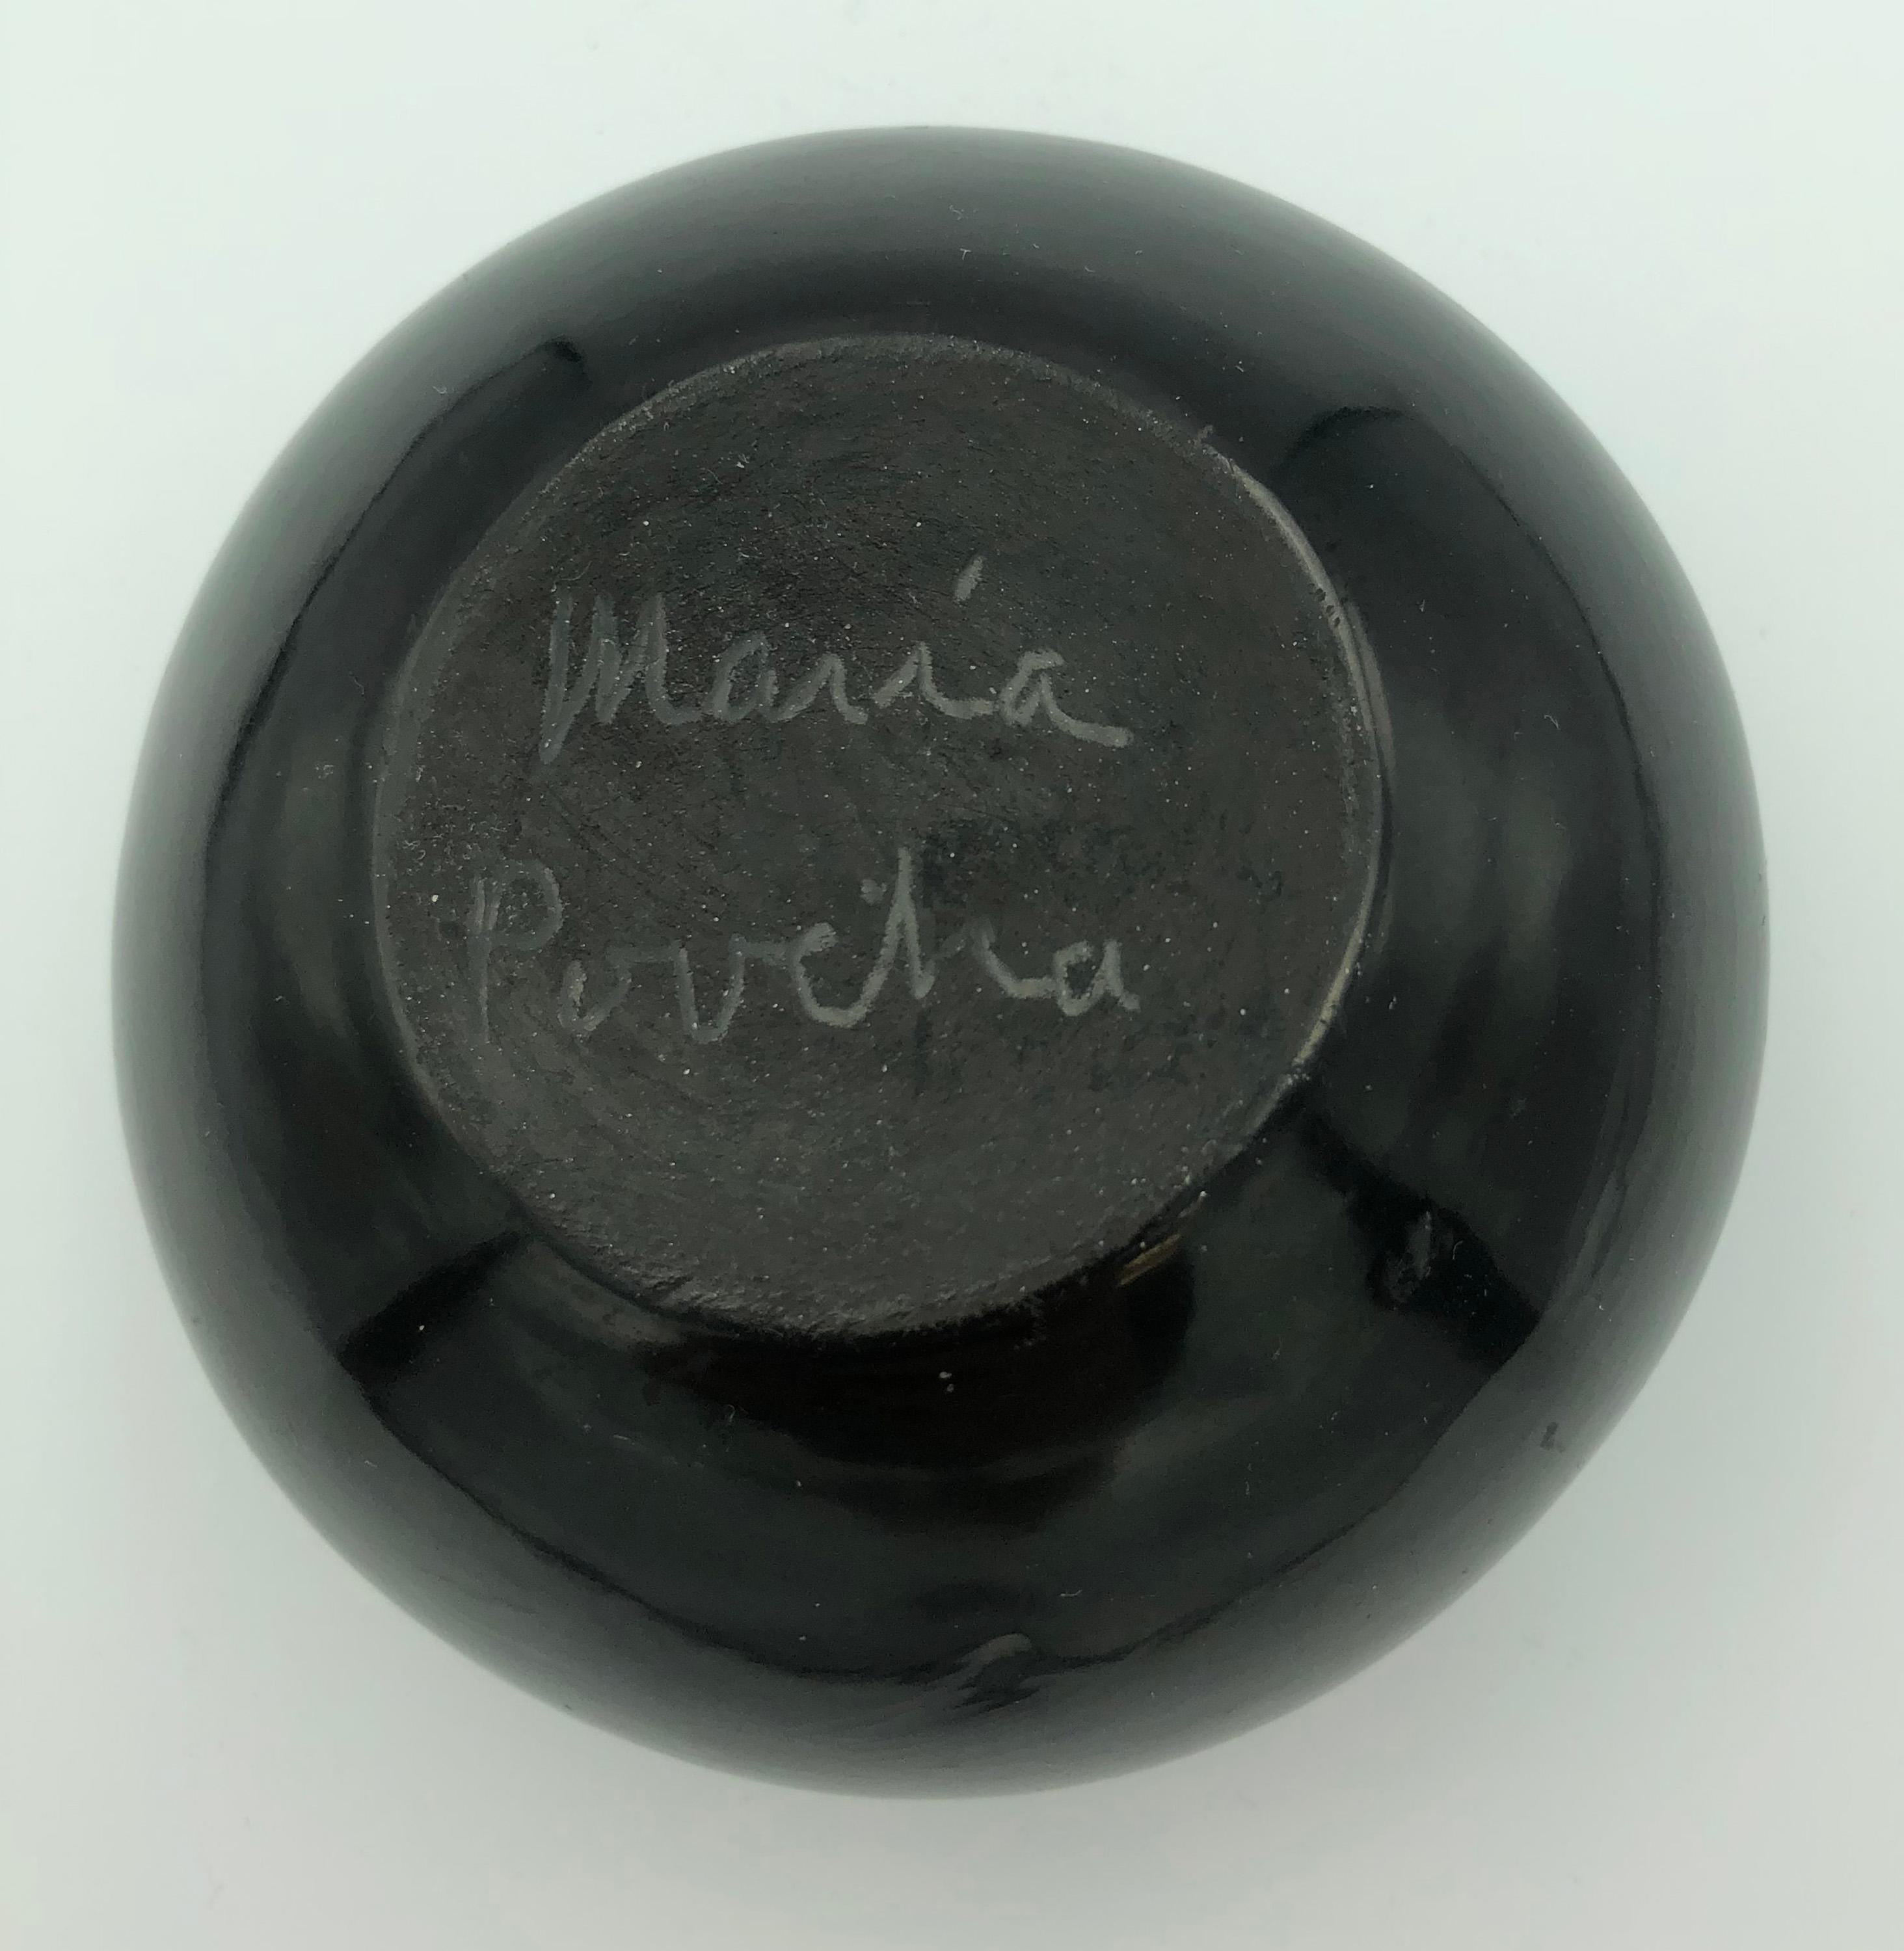 maria martinez pottery value